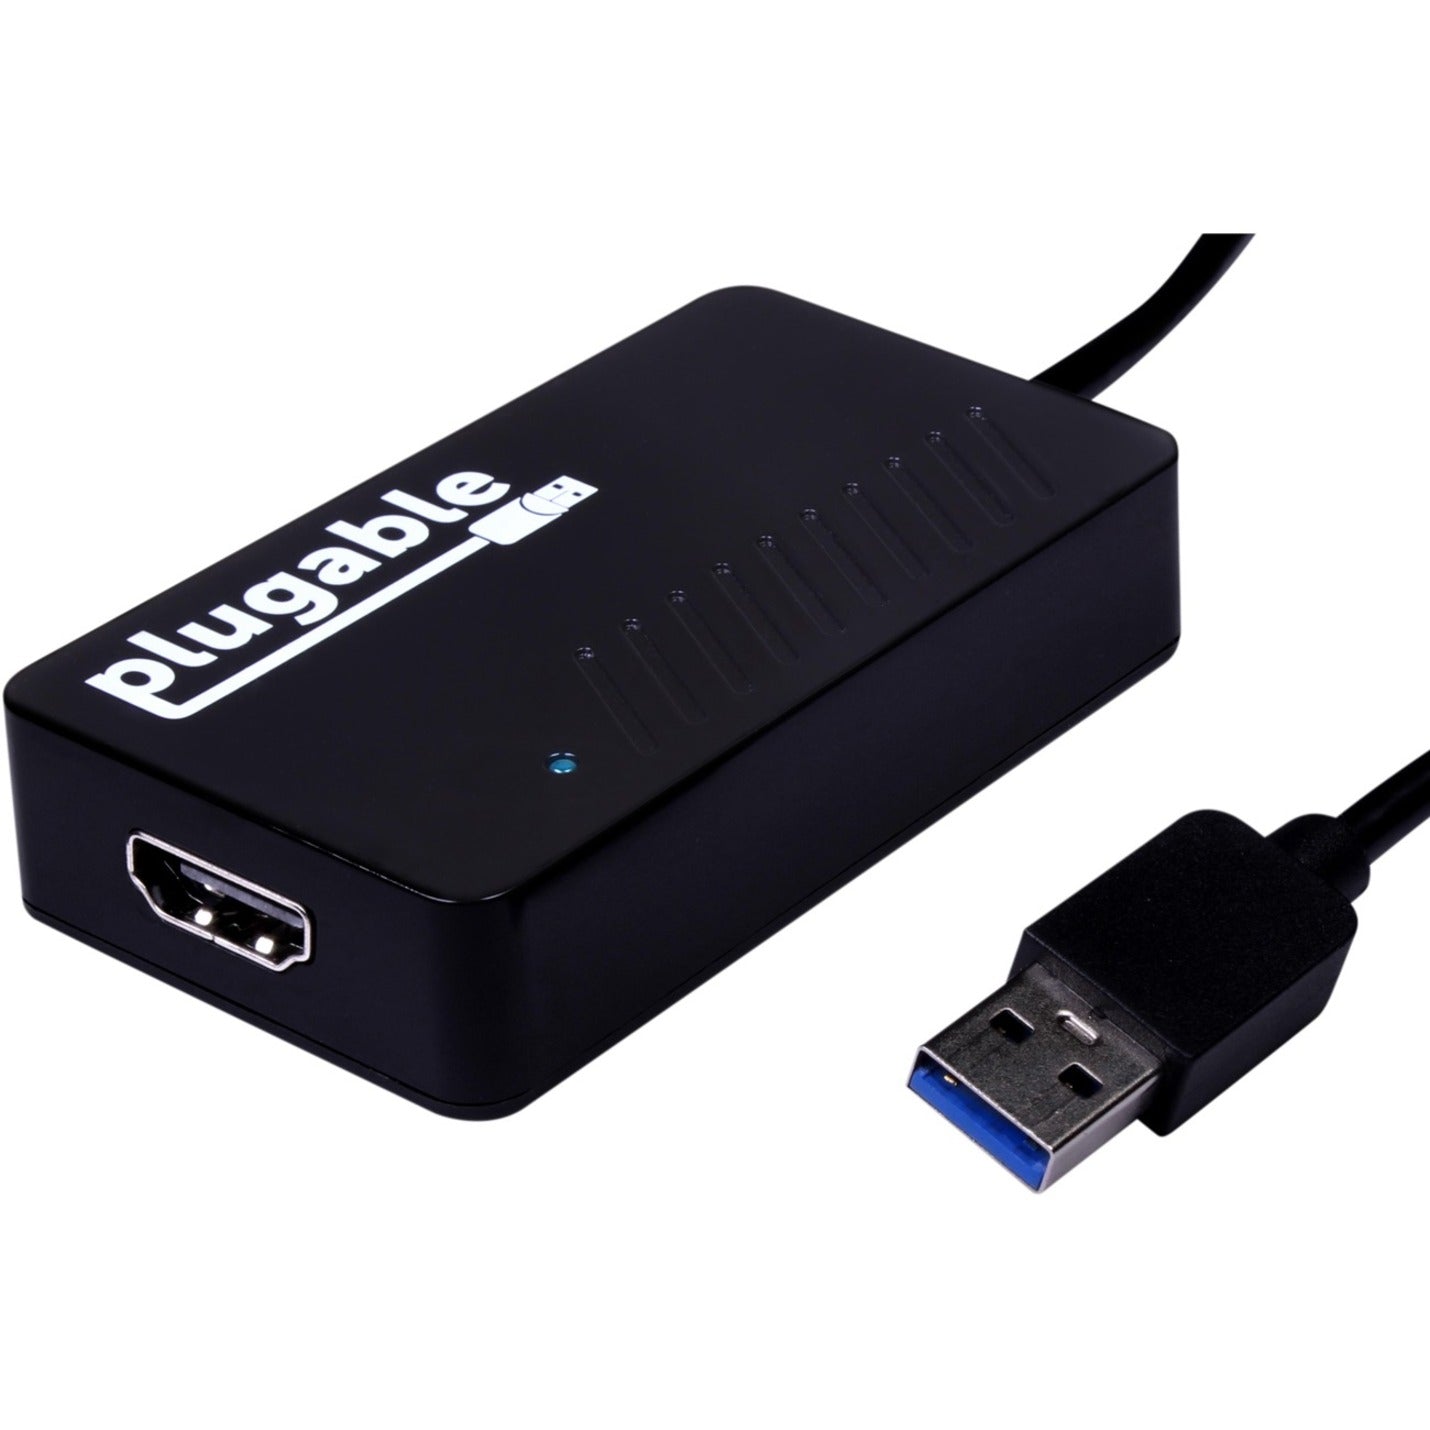 品牌：Plugable Plugable UGA-2KHDMI USB 3.0 到 HDMI 视频图形适配器，带音频，支持多个显示器，2560 x 1440 分辨率